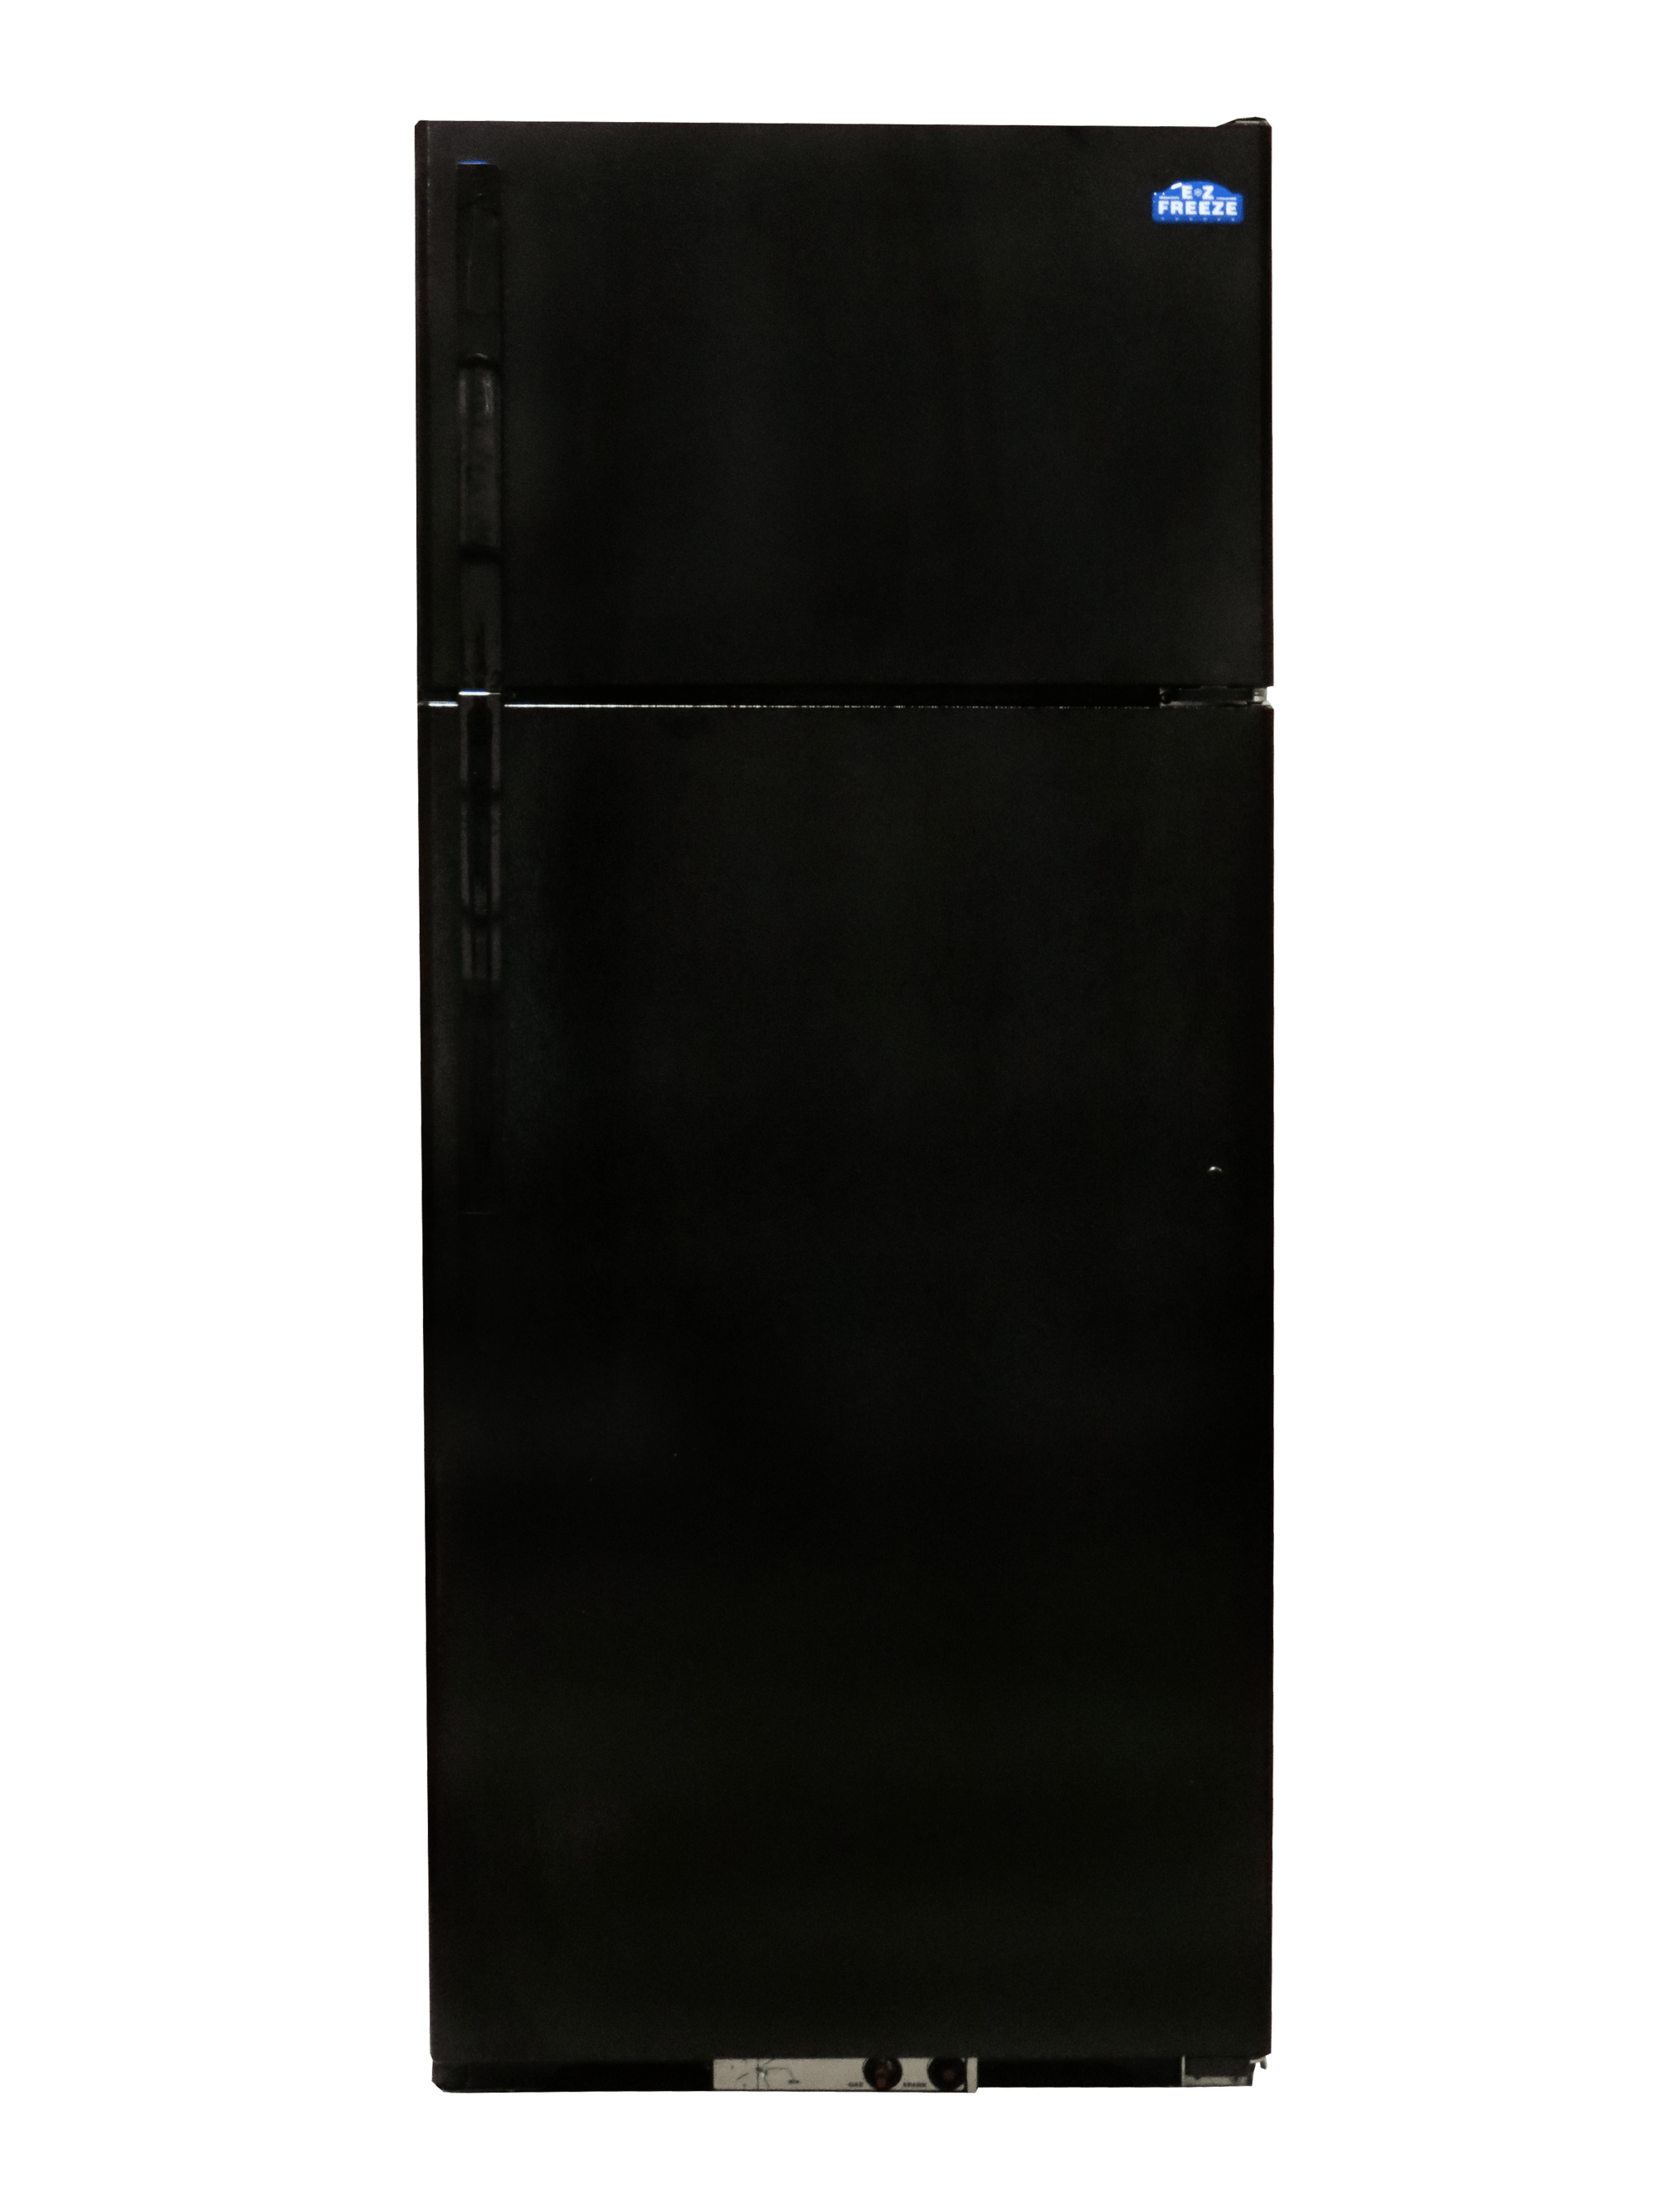 EZ Freeze Propane Refrigerator EZ Freeze EZ-19B 19 cu. ft. Propane Refrigerator-Freezer in Black